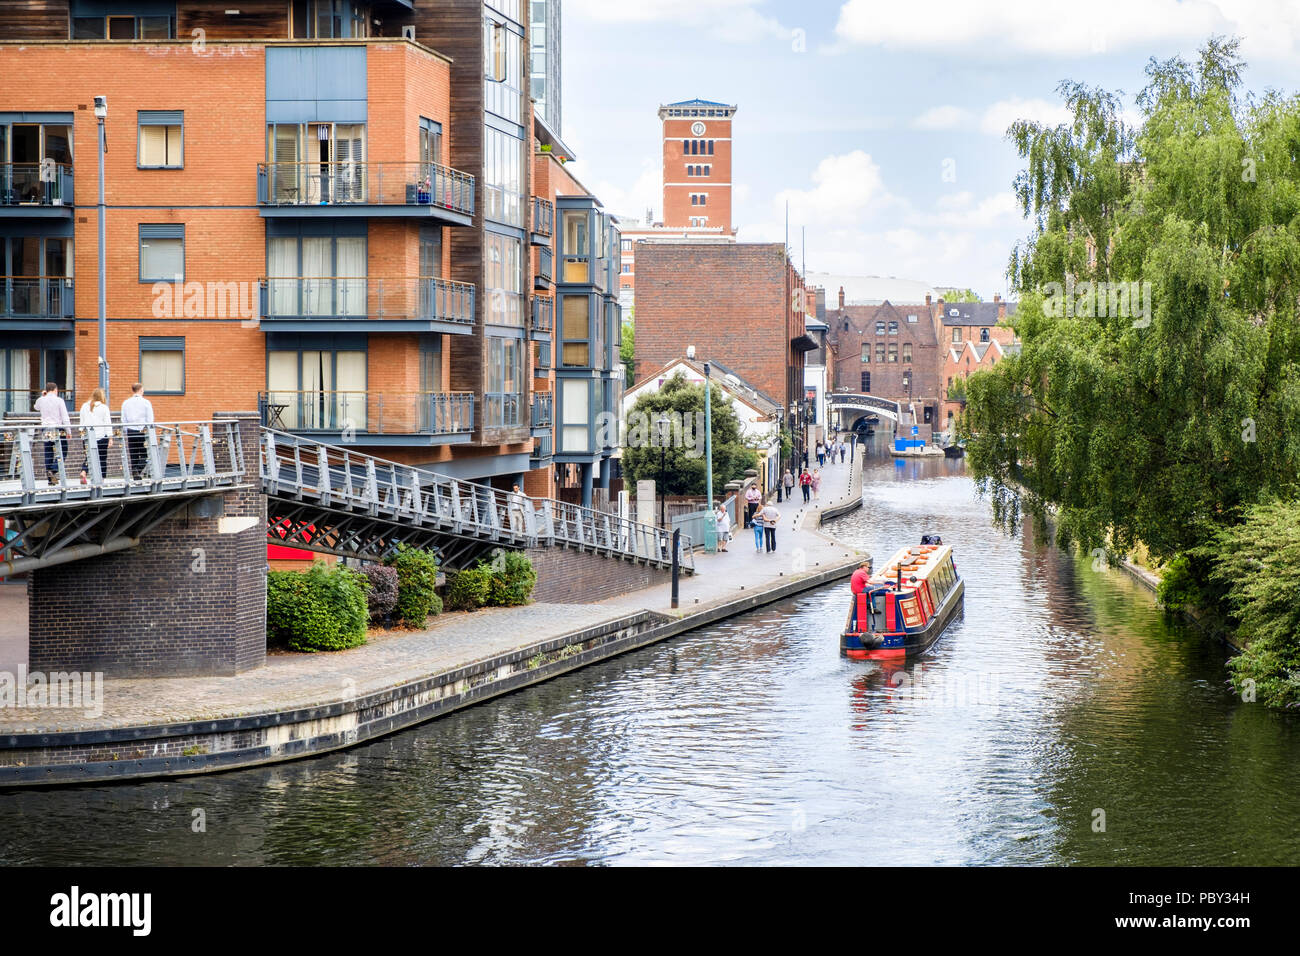 Canali di Birmingham. Un narrowboat navigazione del Worcester e Birmingham Canal a Birmingham, Inghilterra, Regno Unito Foto Stock